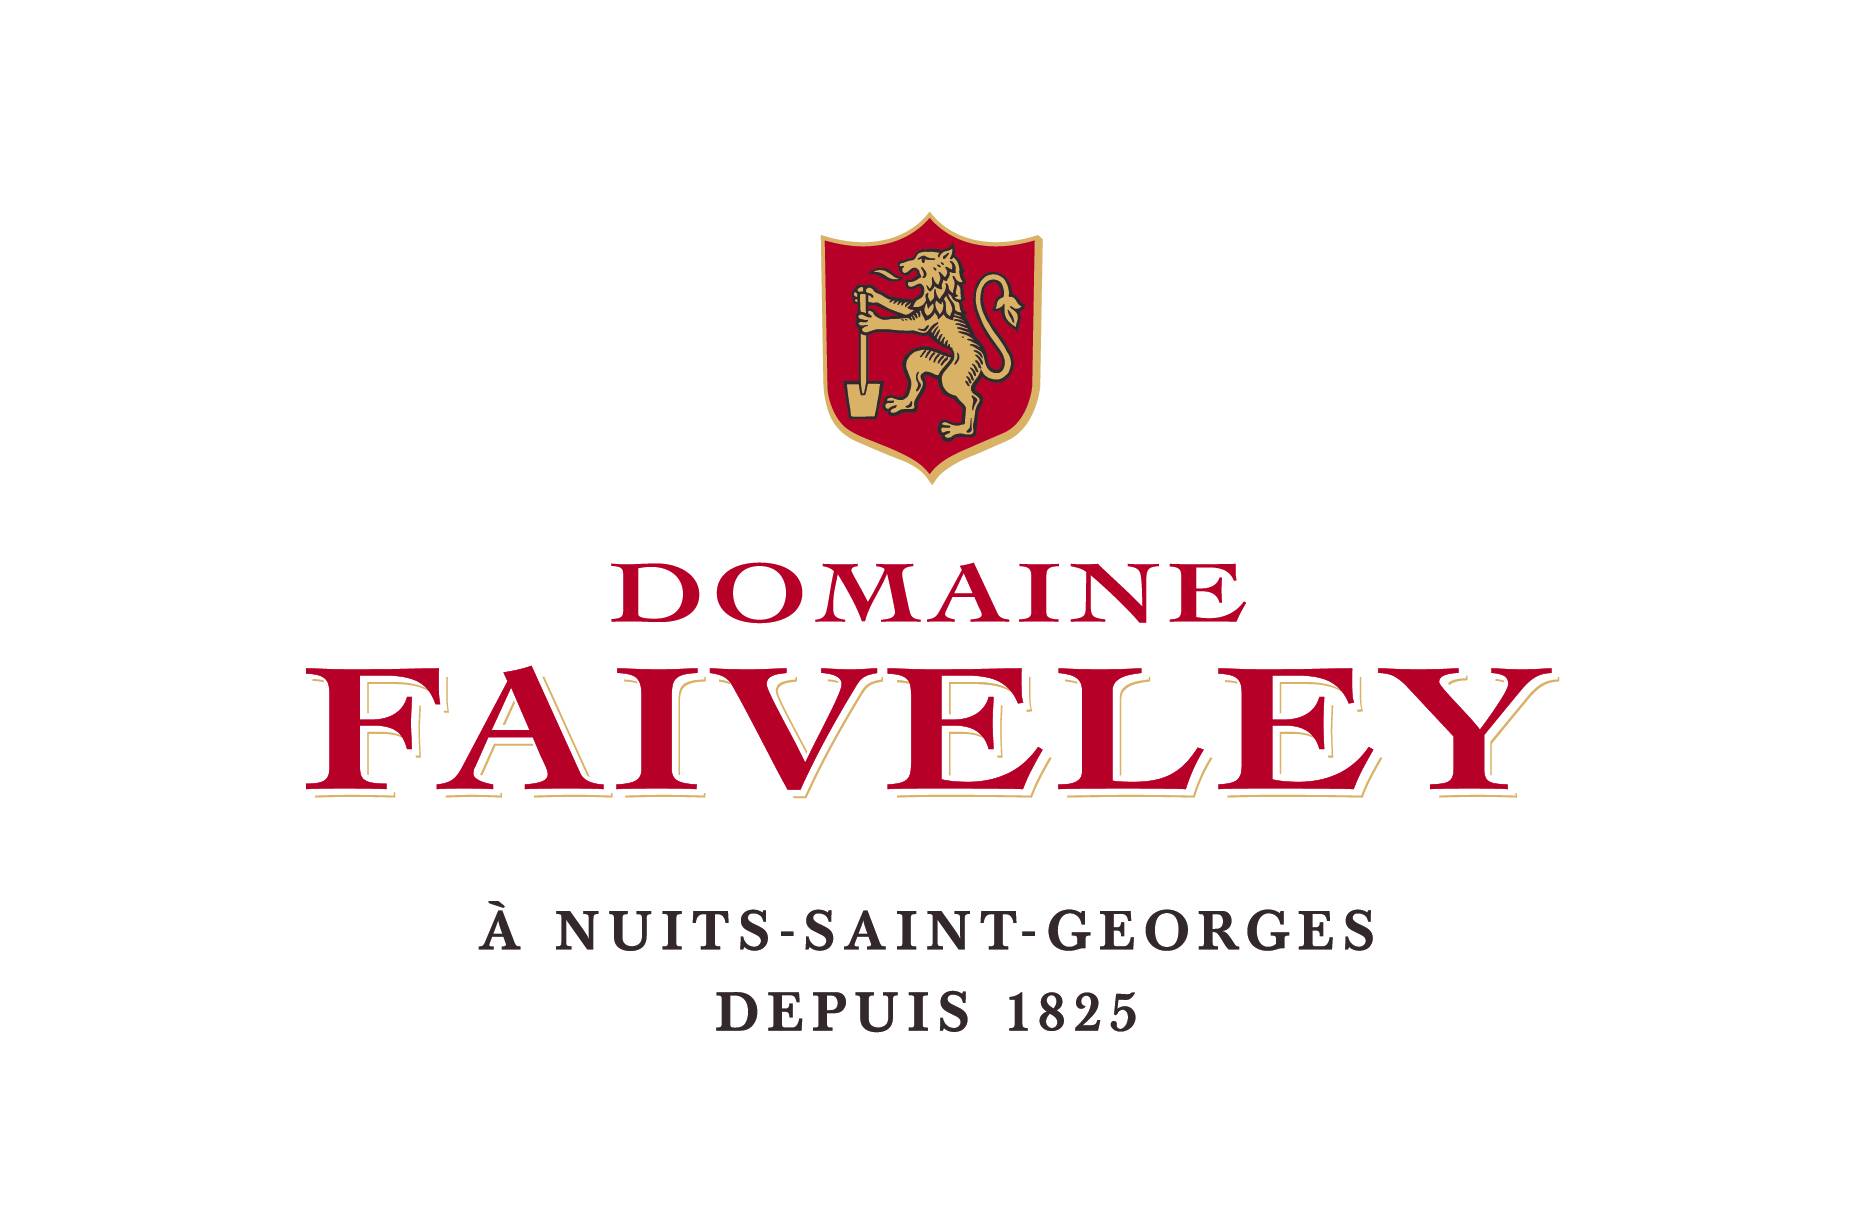 DOMAINE FAIVELEY Producteurs de Grands Vins de Bourgogne depuis 7 générations, nous cultivons avec passion chacun de nos terroirs pour en révéler l’excellence.